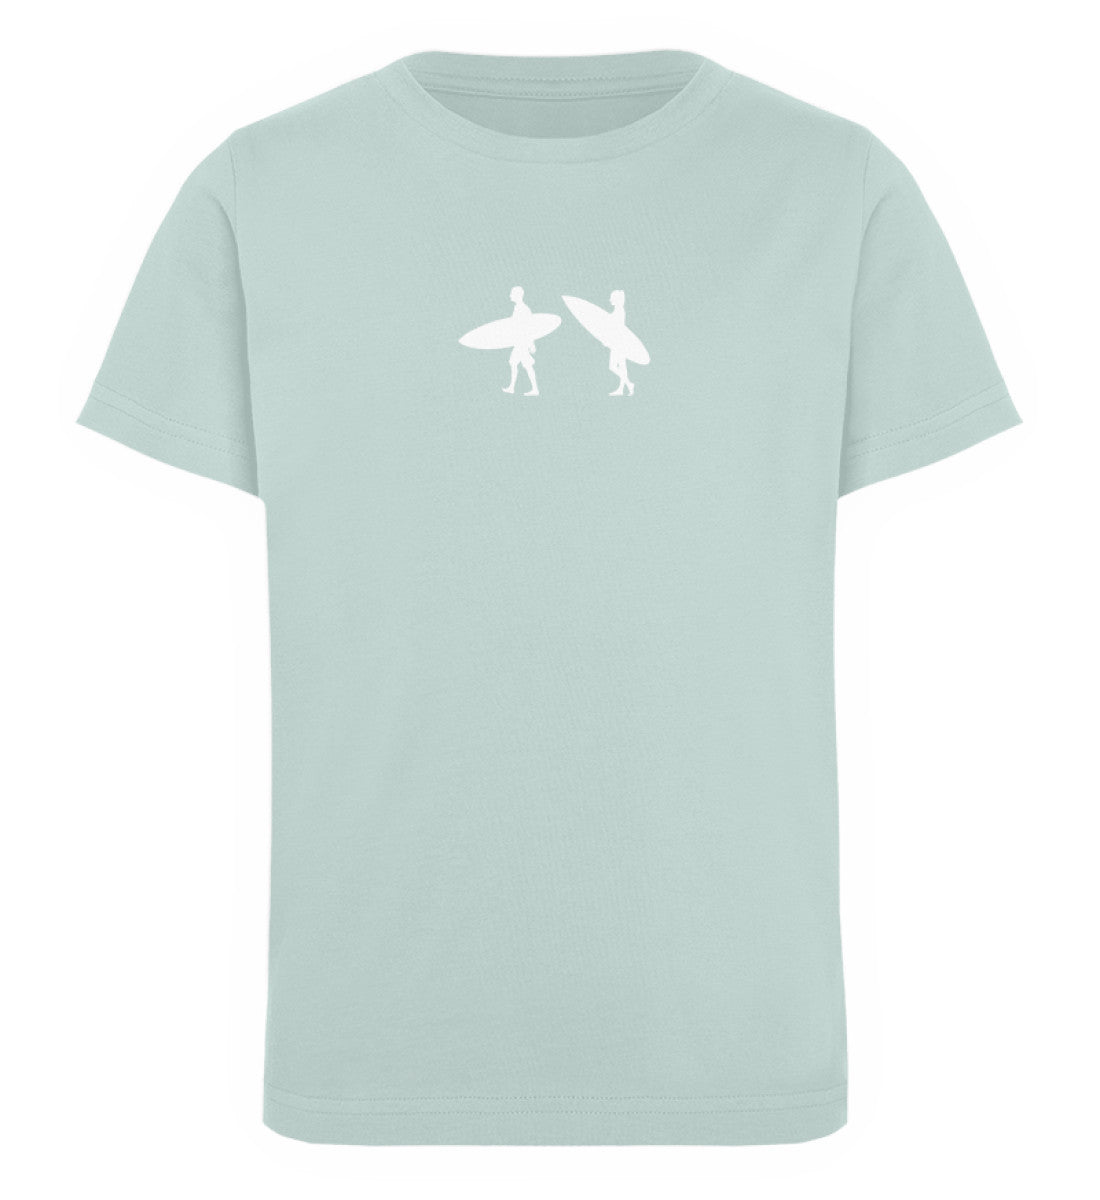 Carribean Green farbiges Kinder T-Shirt für Mädchen und Jungen bedruckt mit dem Design der Roger Rockawoo Kollektion Tiny Surfer